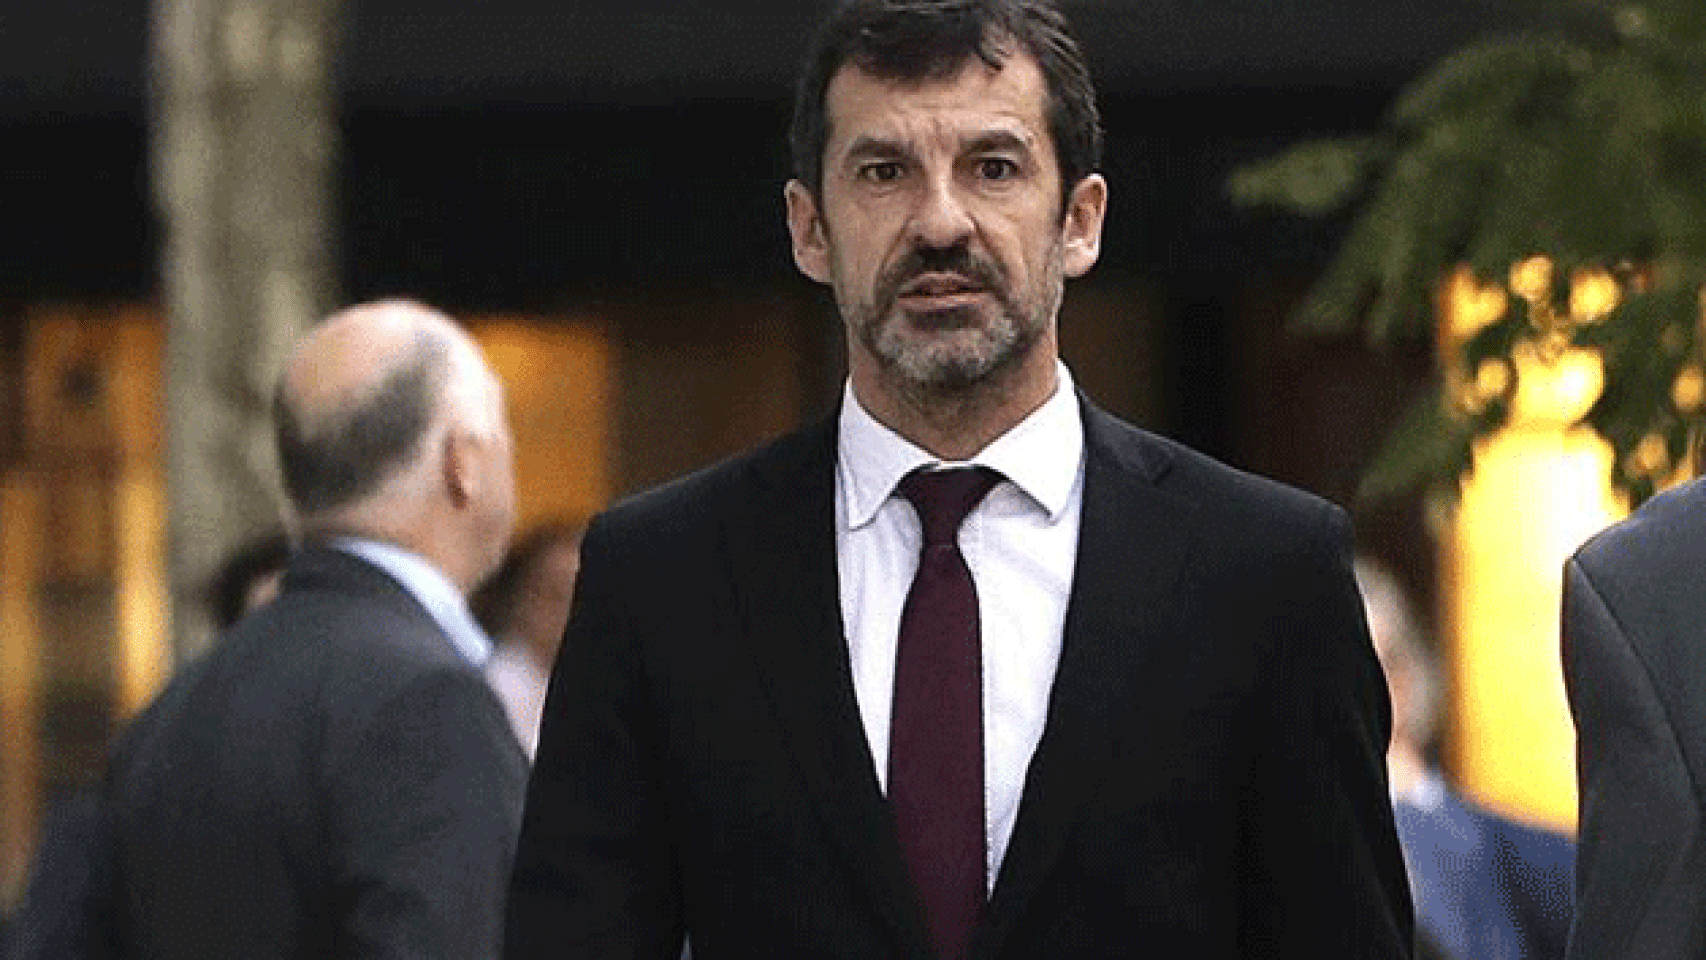 El comisario Ferran López, nuevo jefe de los Mossos d'Esquadra / EFE